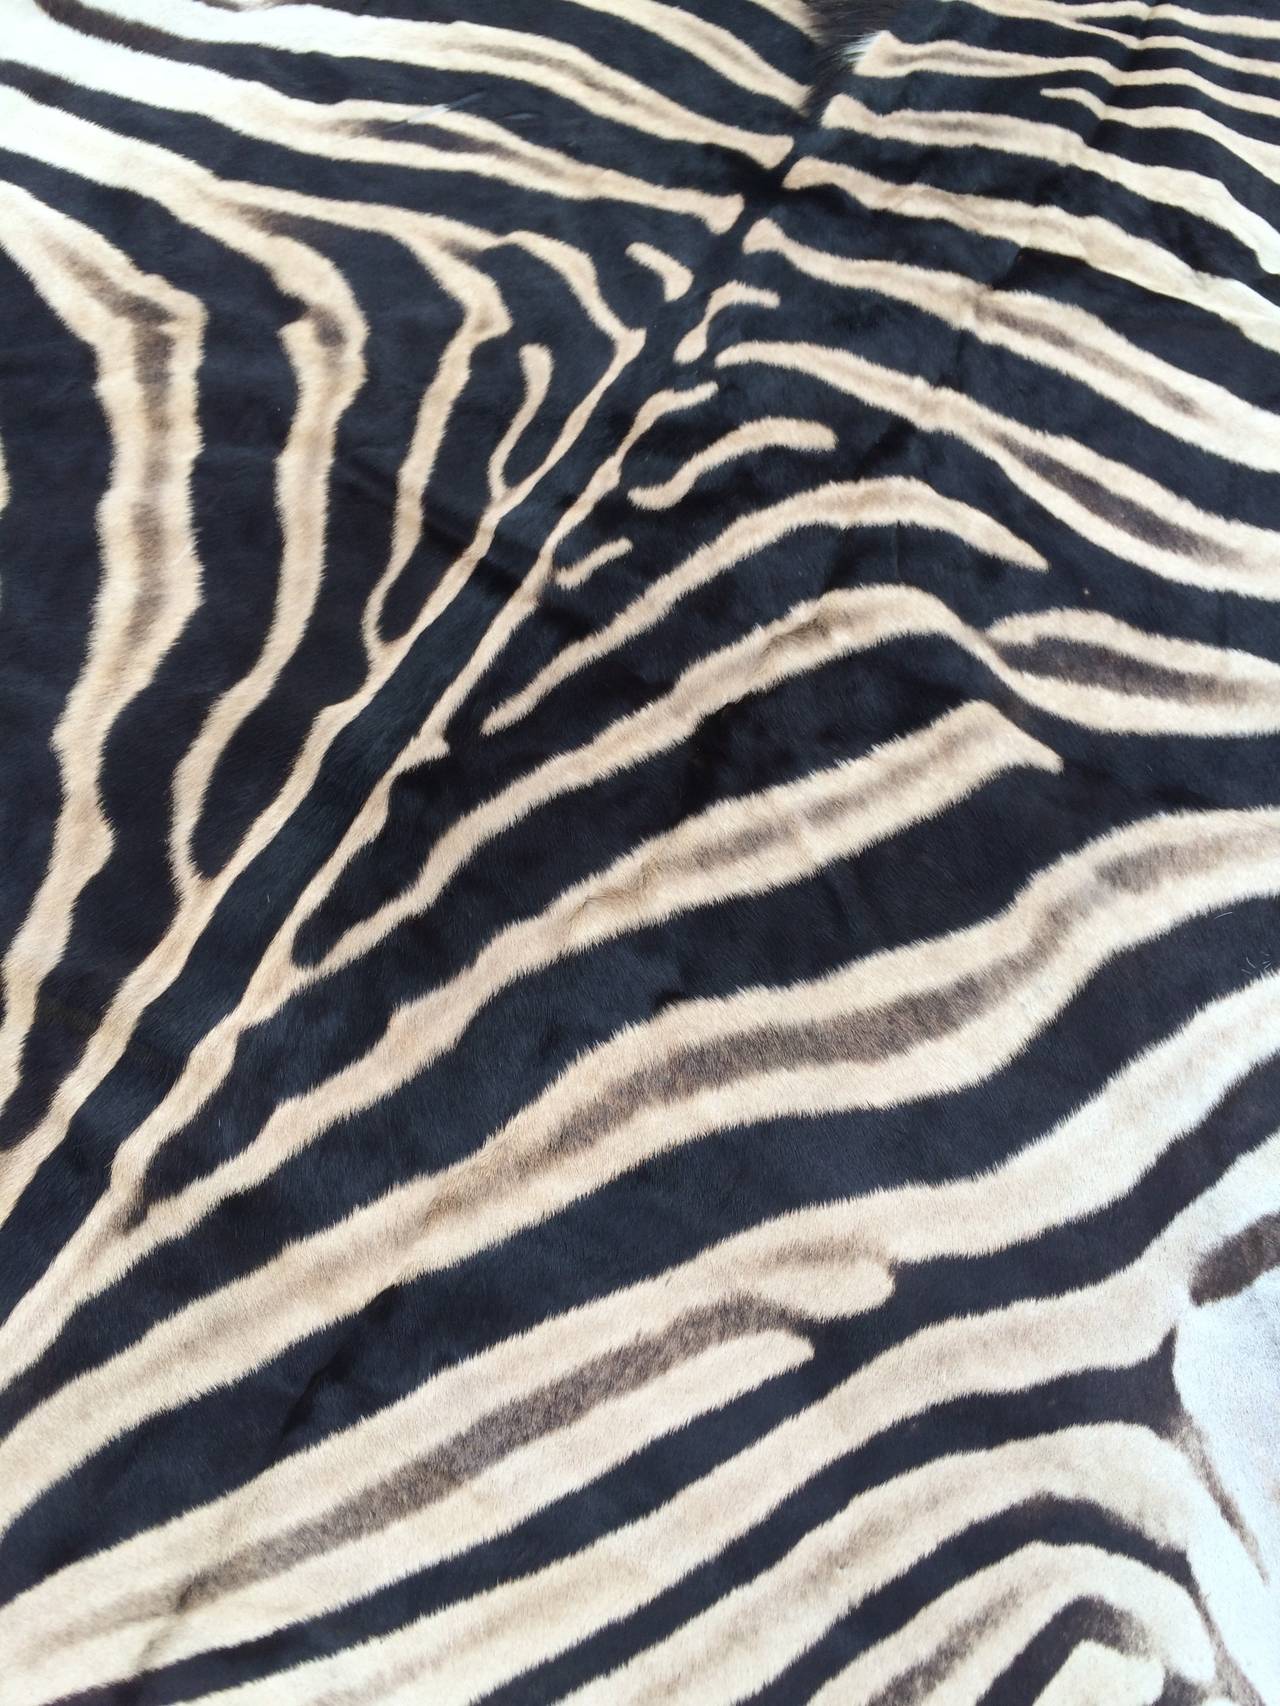 African Zebra Hide